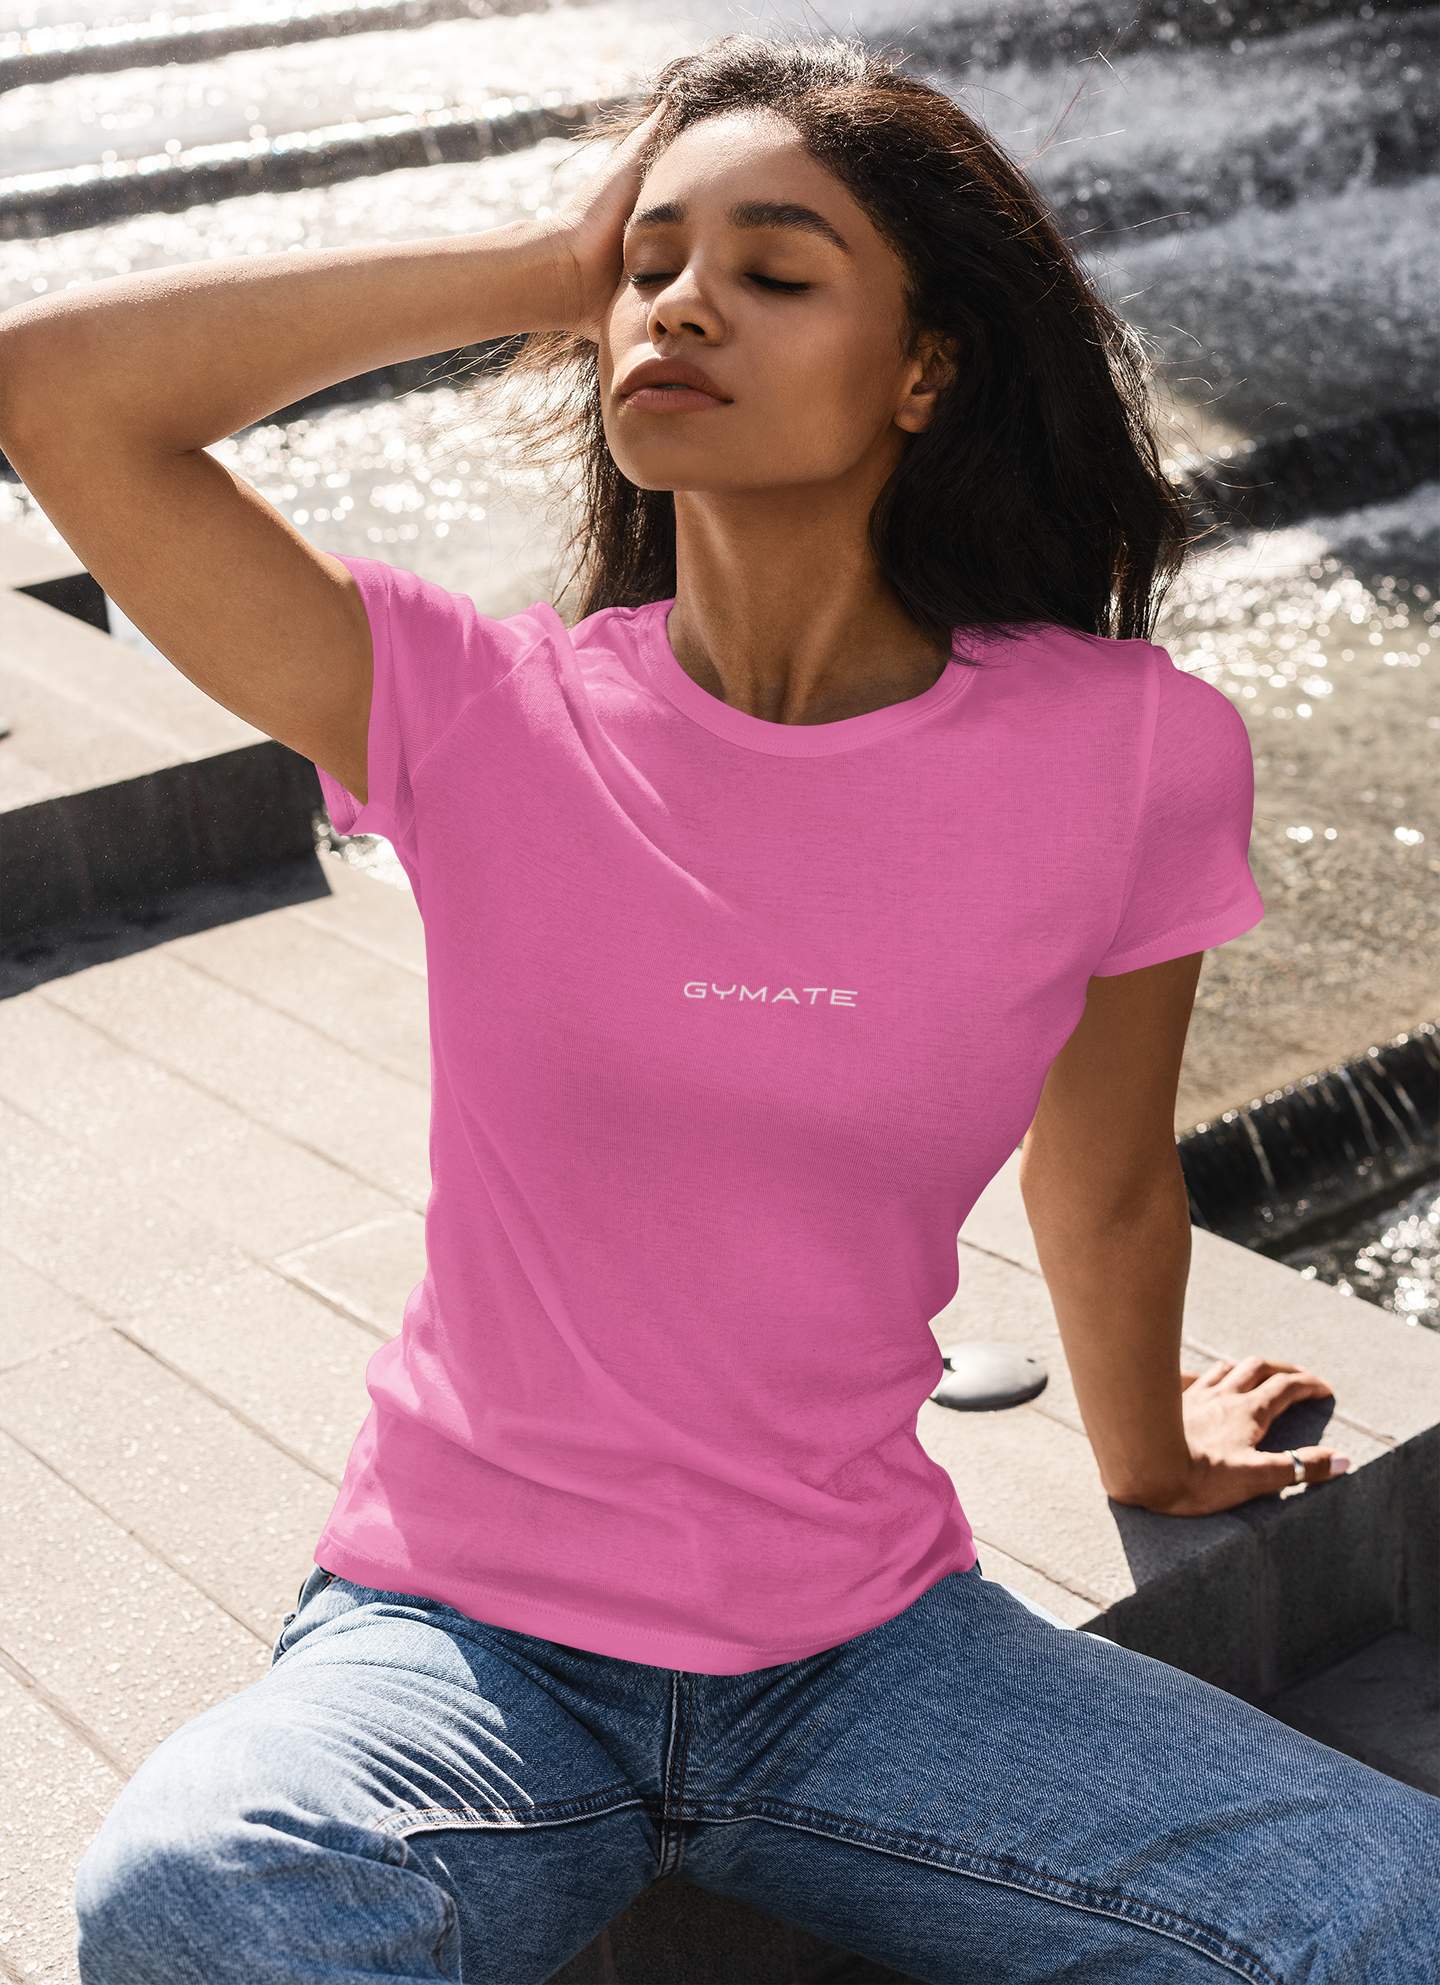 Designer womens T shirts for women Original Gymate [centre] pink